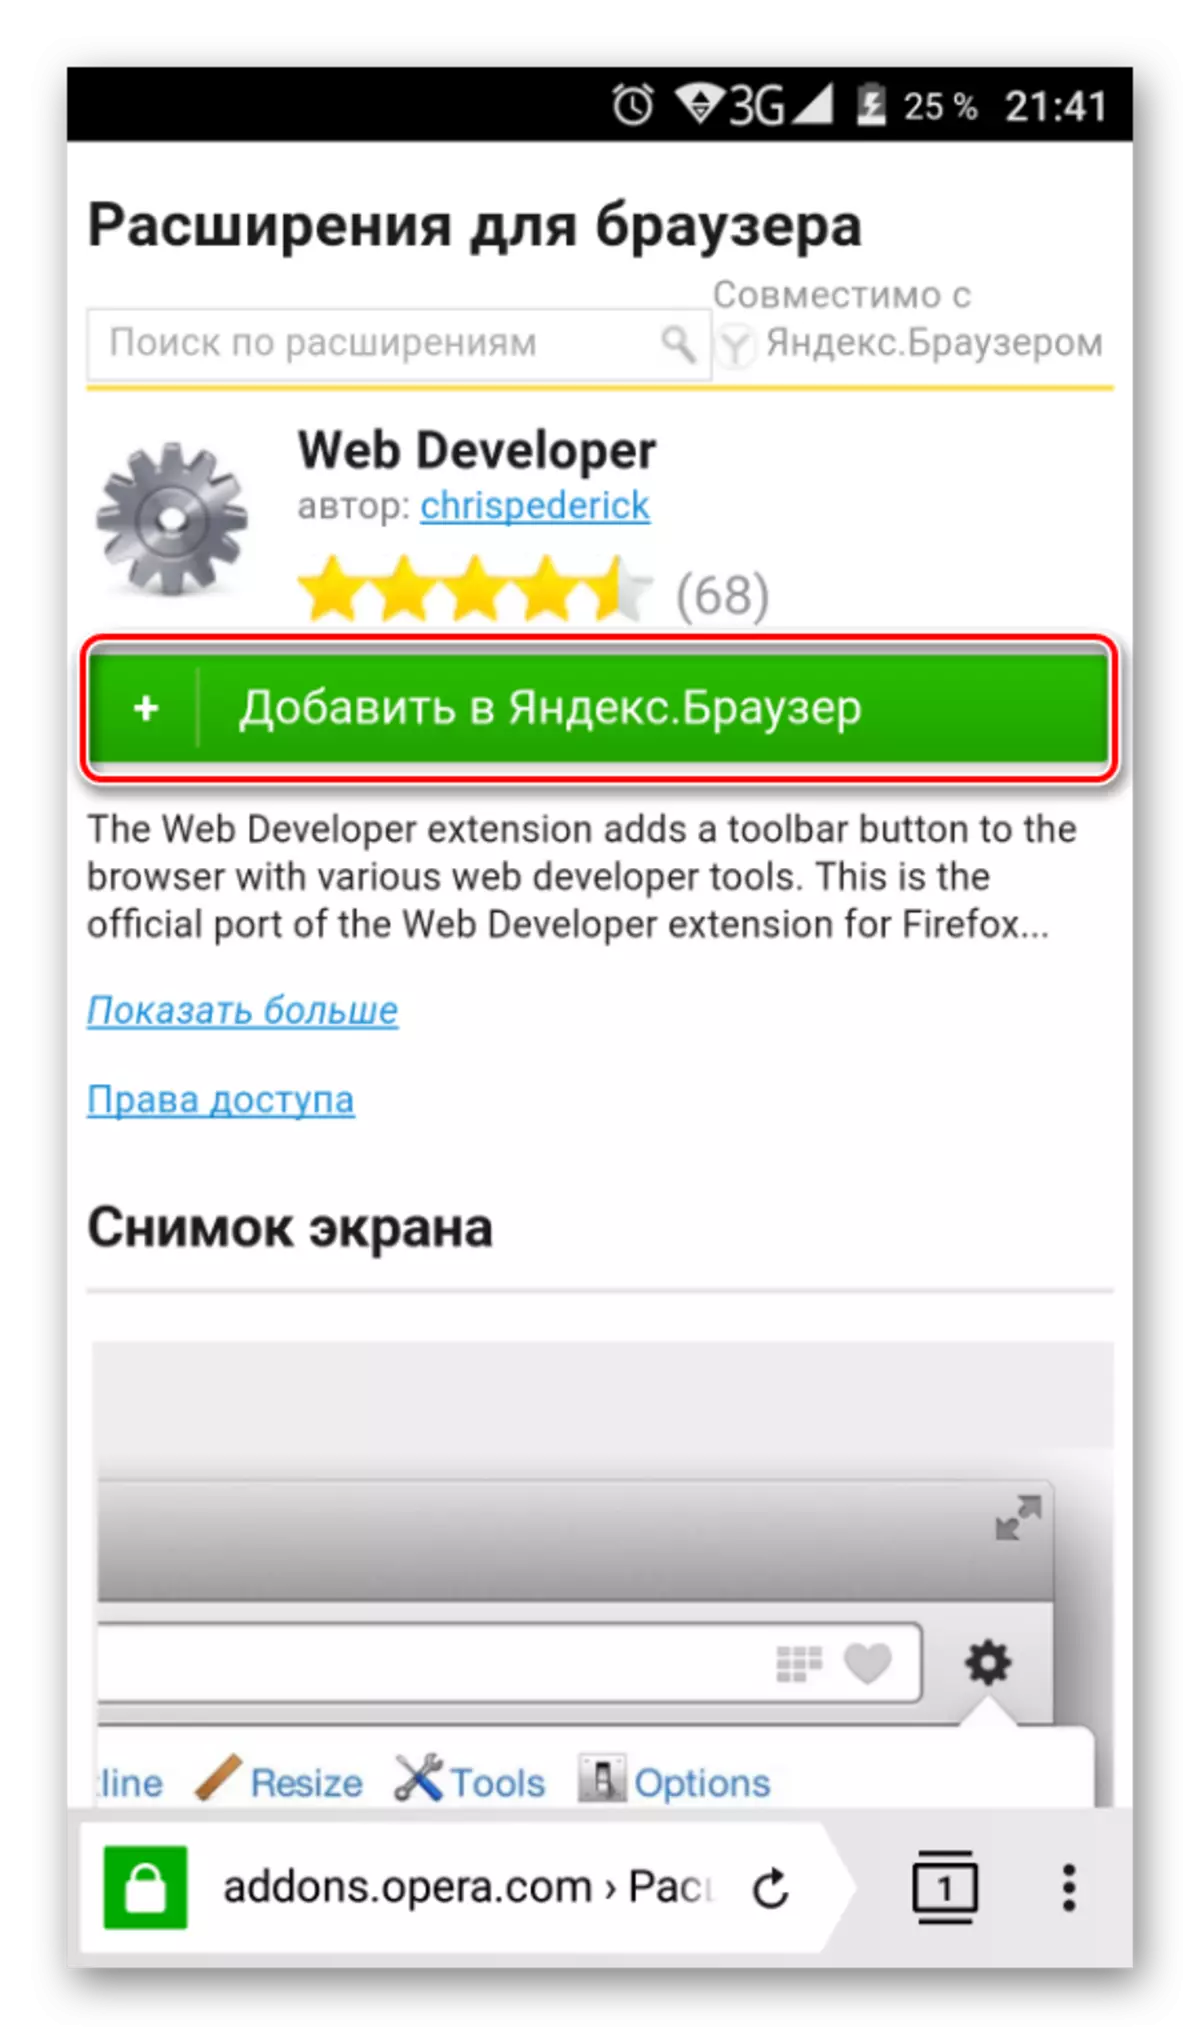 Installieren einer Erweiterung von OPERA-Addons nach Yandex.Bauzer